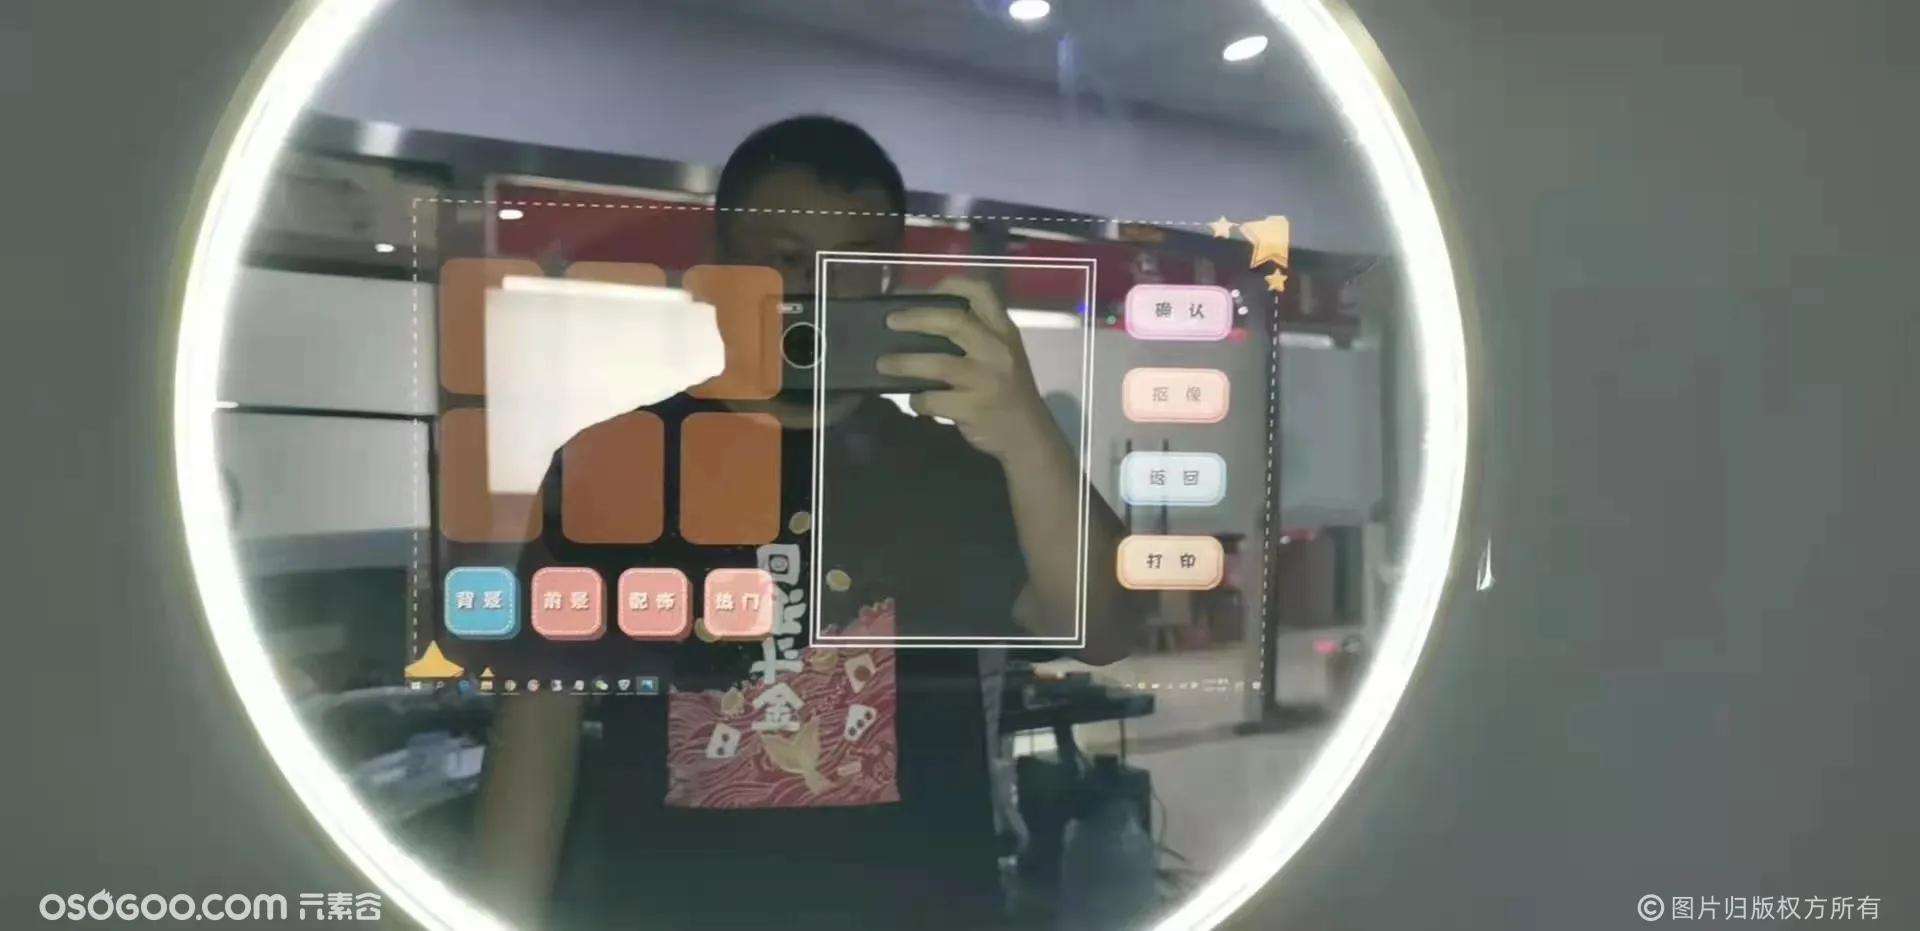 AR智能道具魔法镜能与人互动的镜子 摄影自拍镜